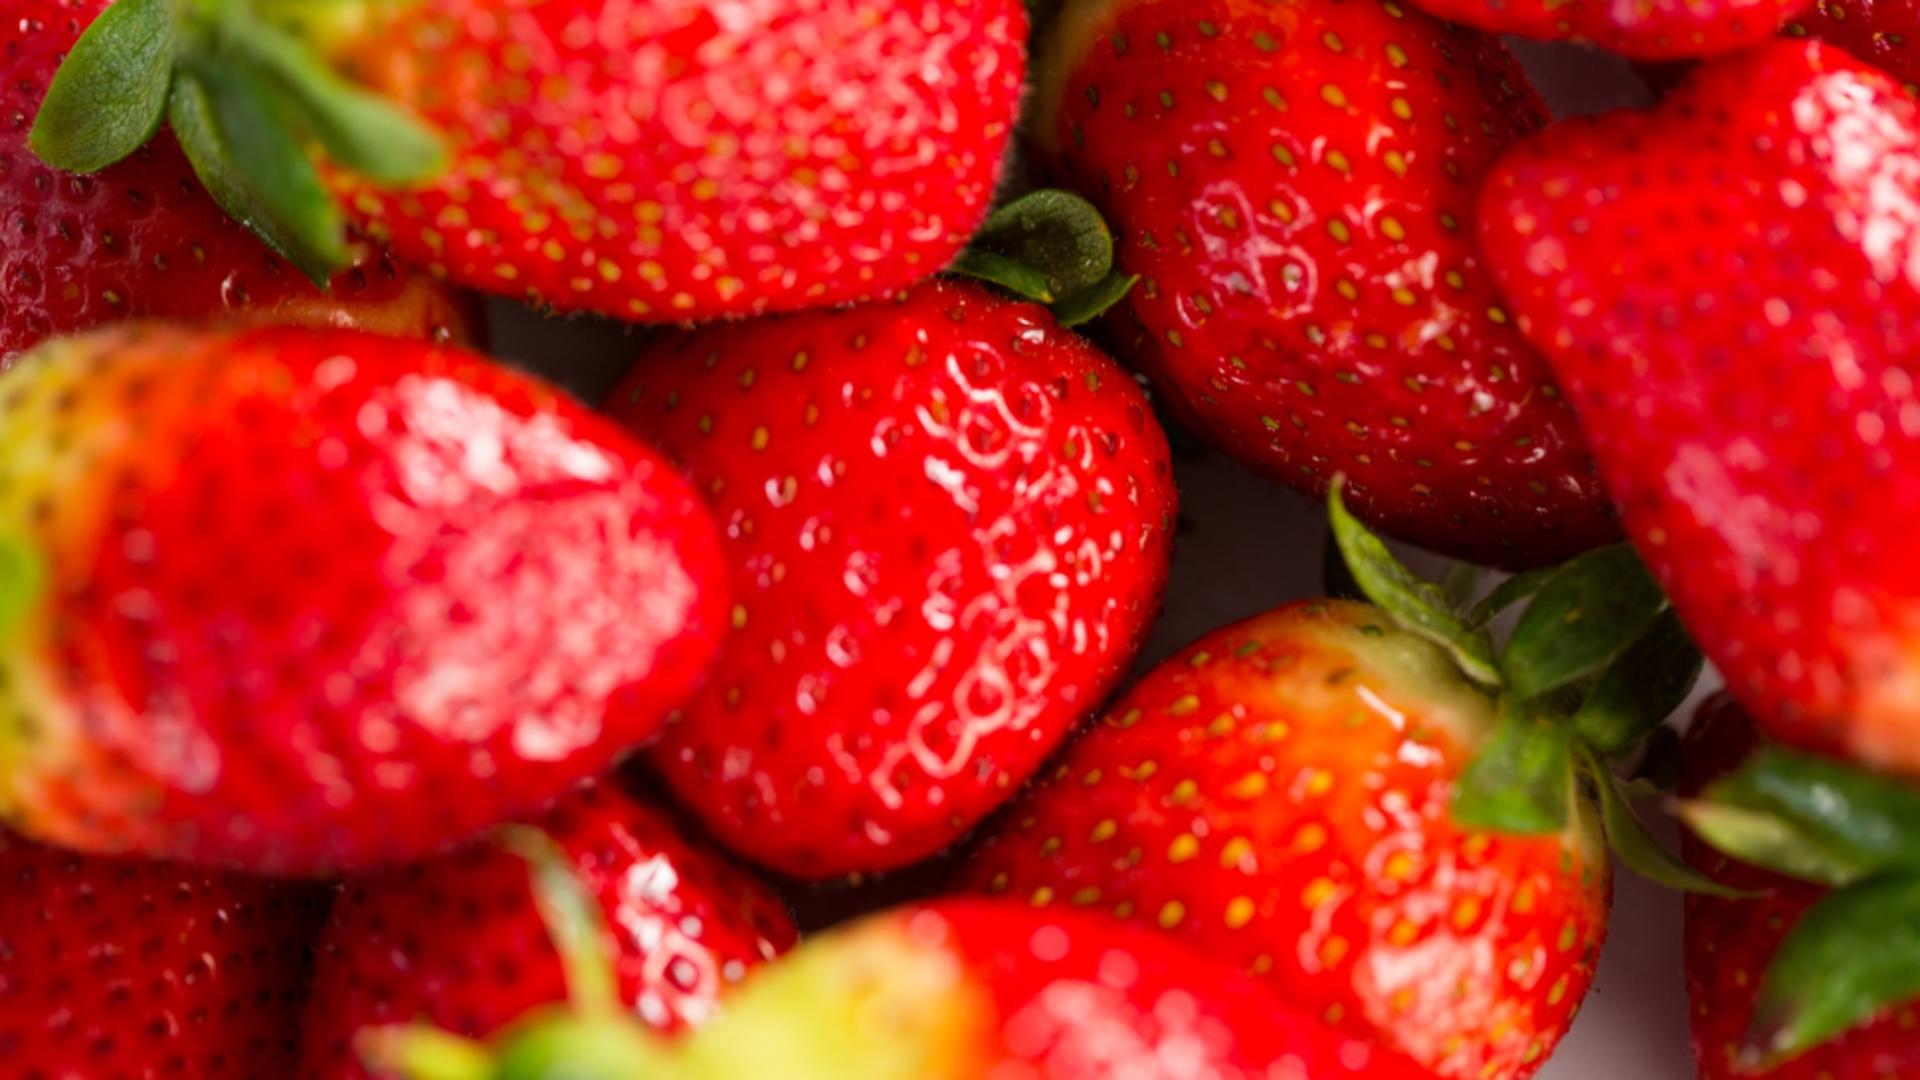 Căpșuni gustoase și sănătoase chiar la tine acasă? Cum trebuie să le îngrijești pentru a avea parte de o recoltă bogată